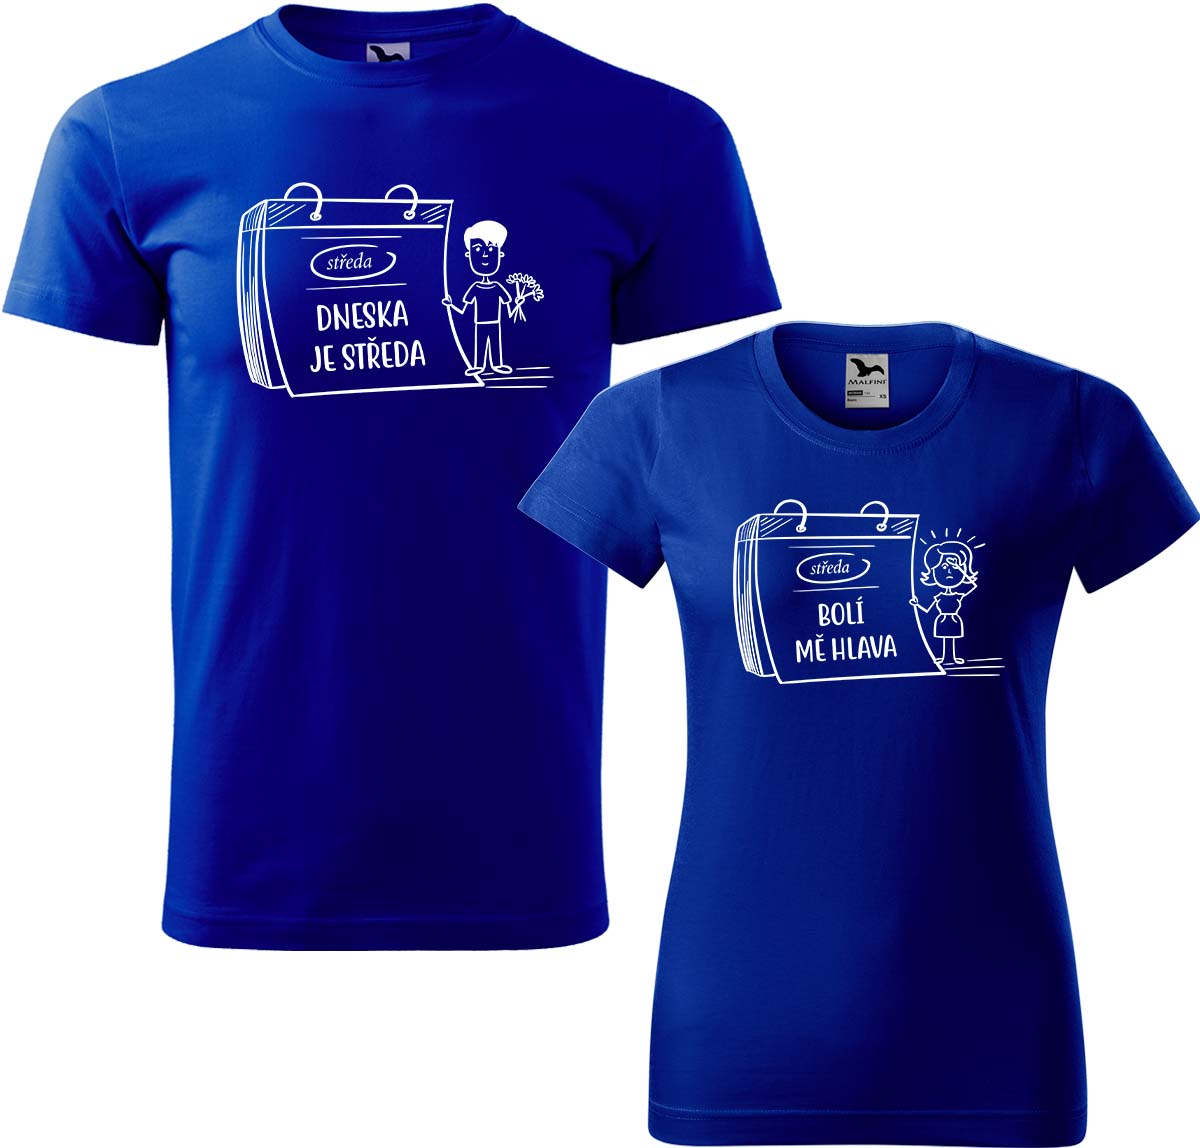 Trička pro páry - Dneska je středa Barva: Královská modrá (05), Velikost dámské tričko: L, Velikost pánské tričko: L